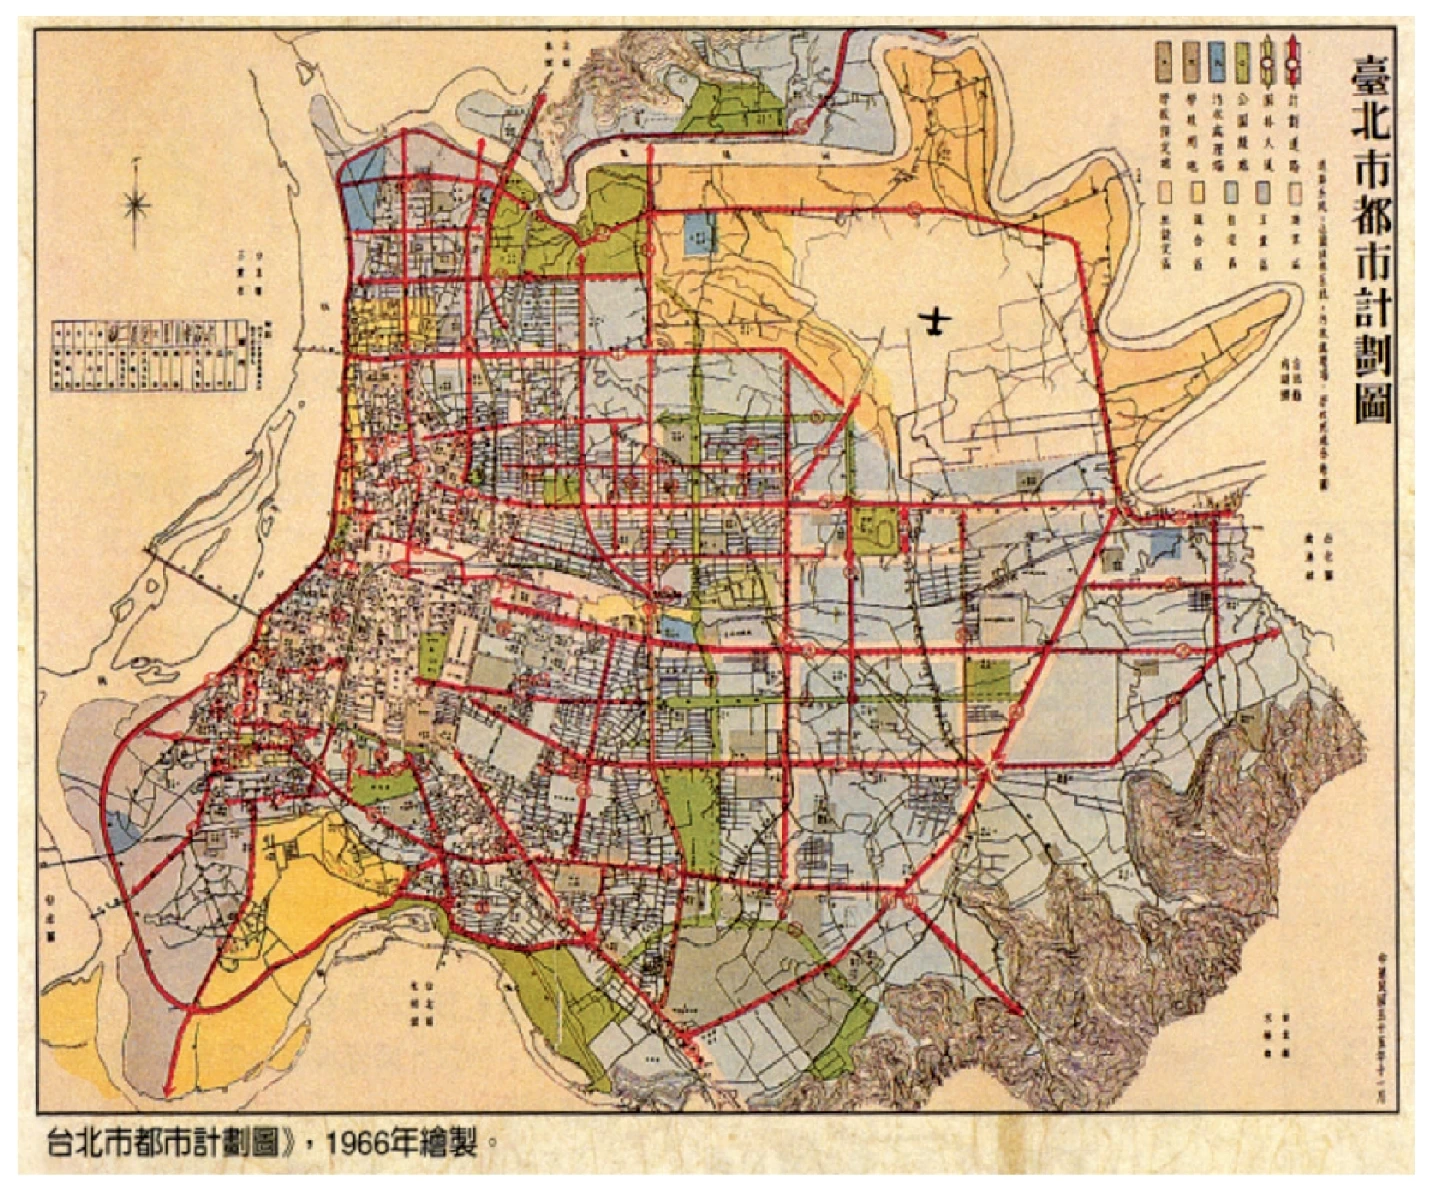 1966 年「台北市都市計劃圖」的公園綠地-圖片